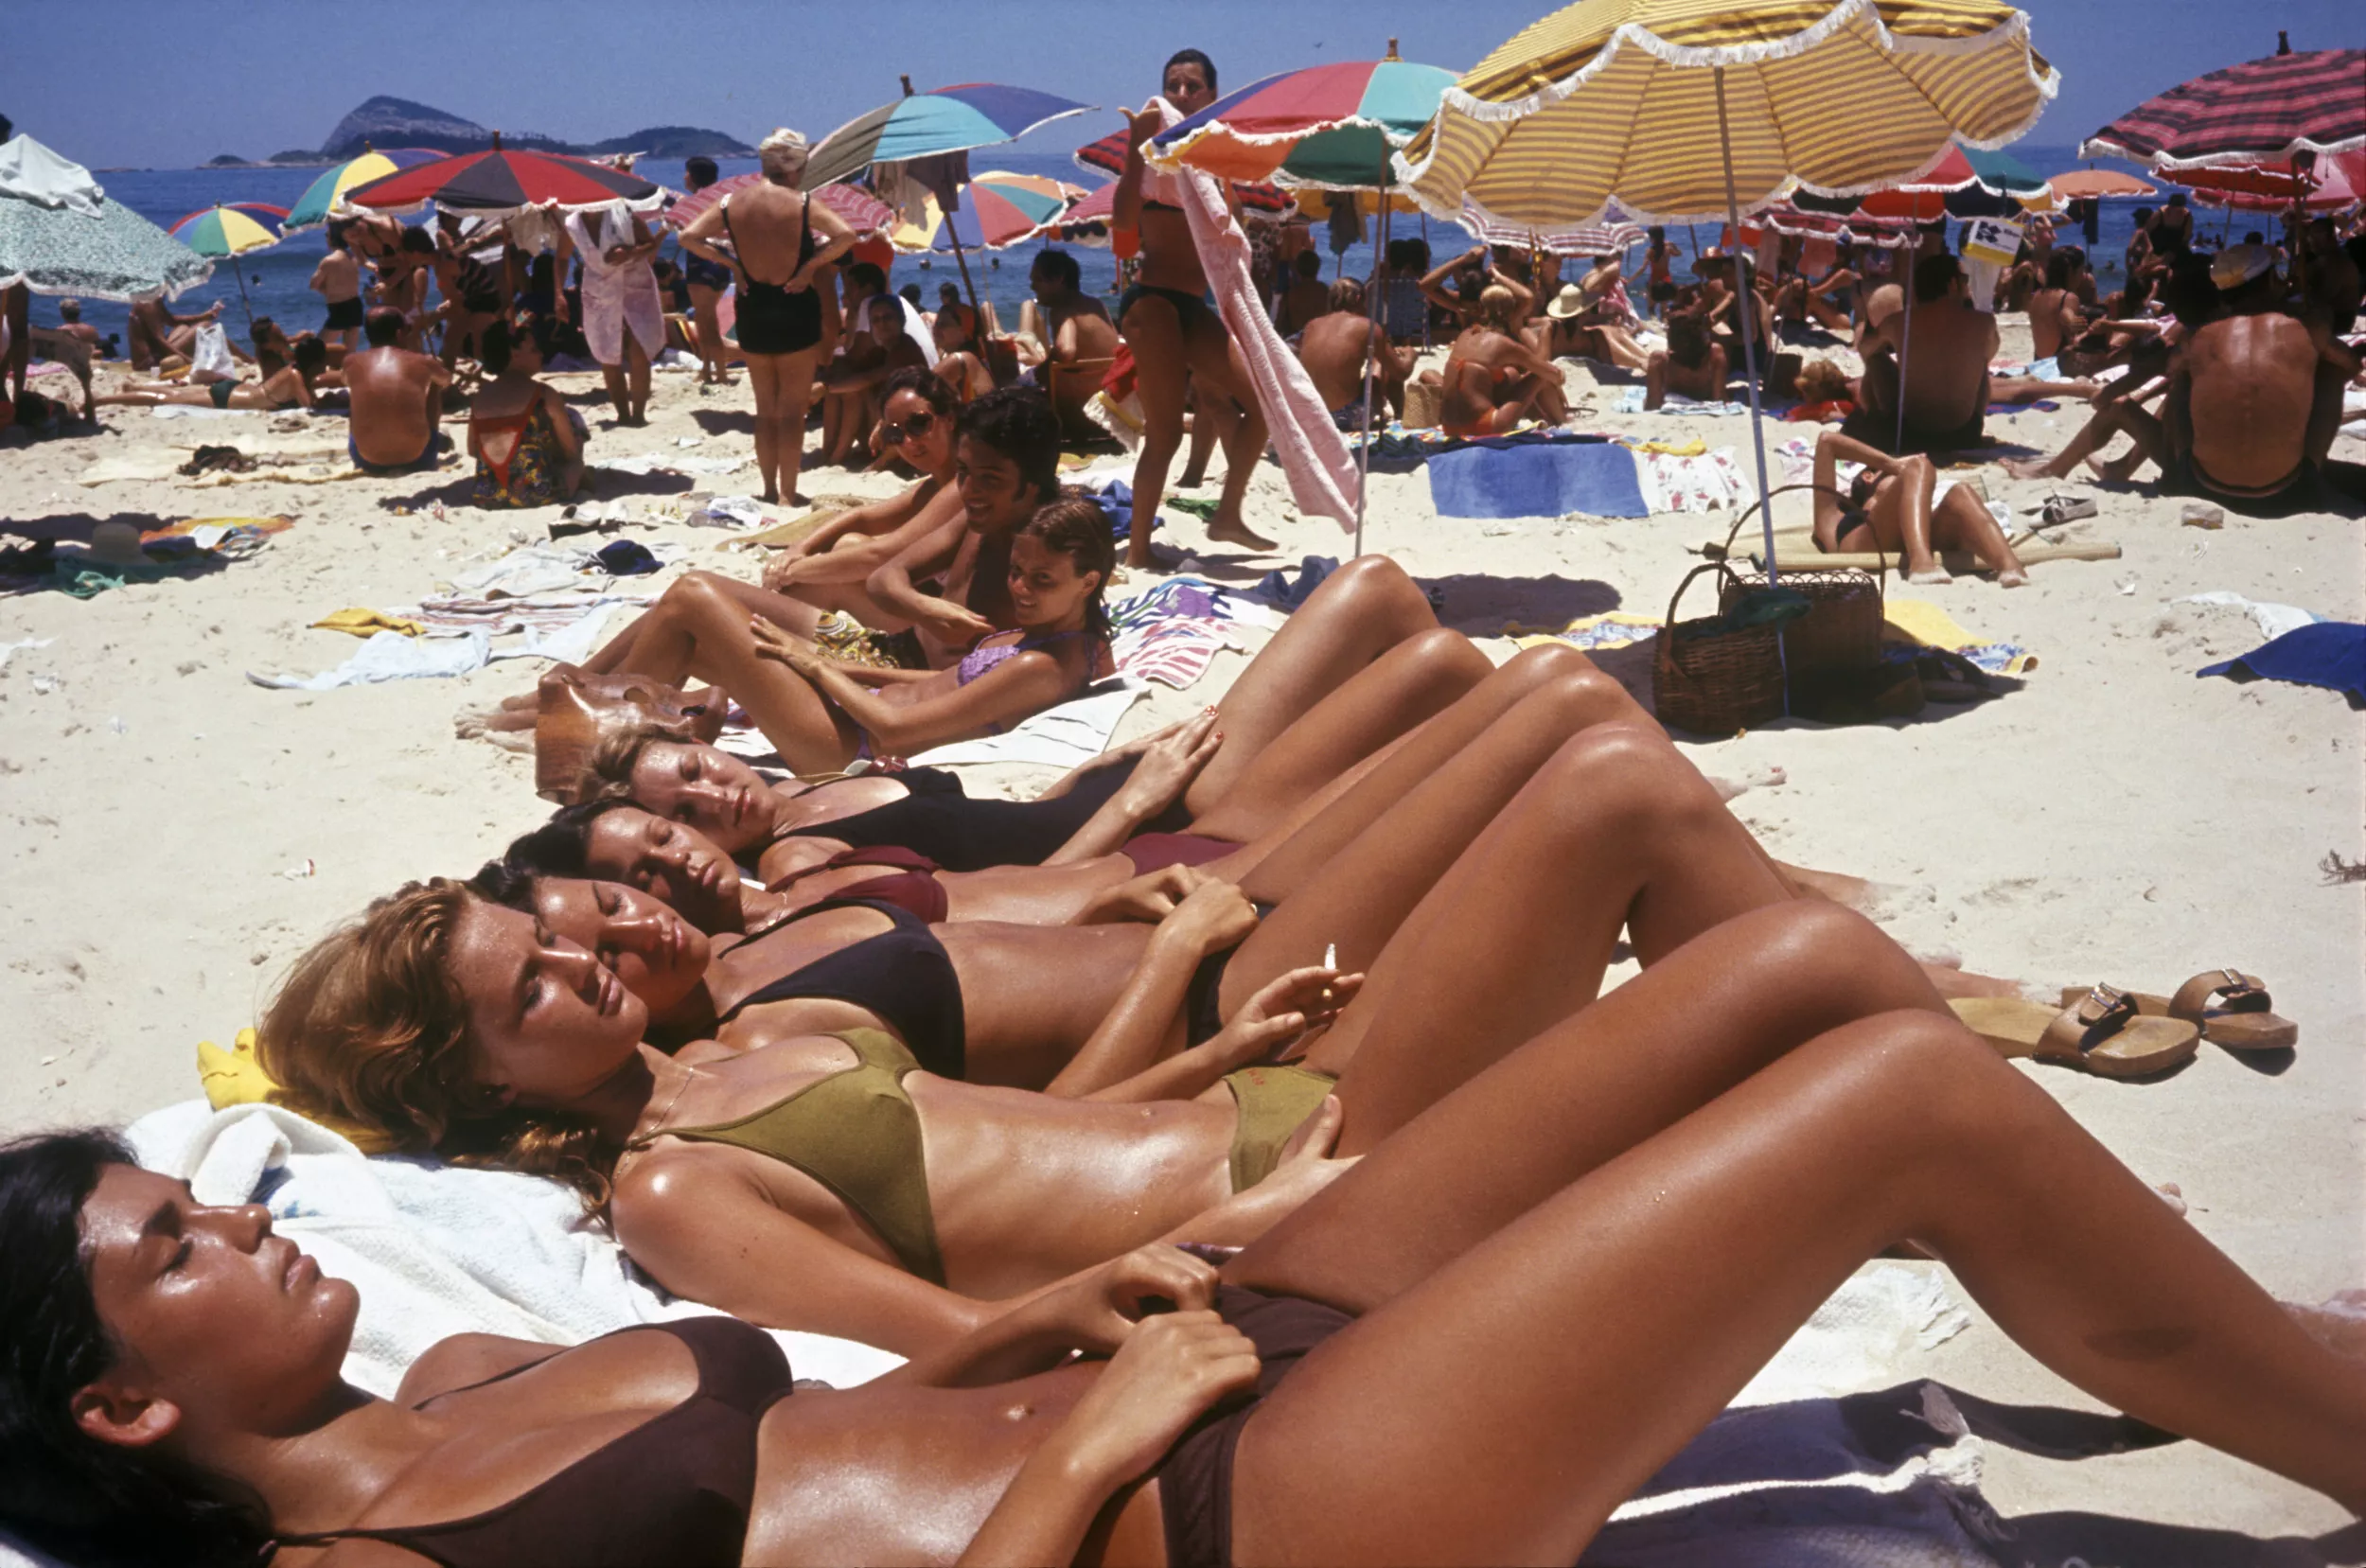 chamara wijetunga share images of bikinis on the beach photos